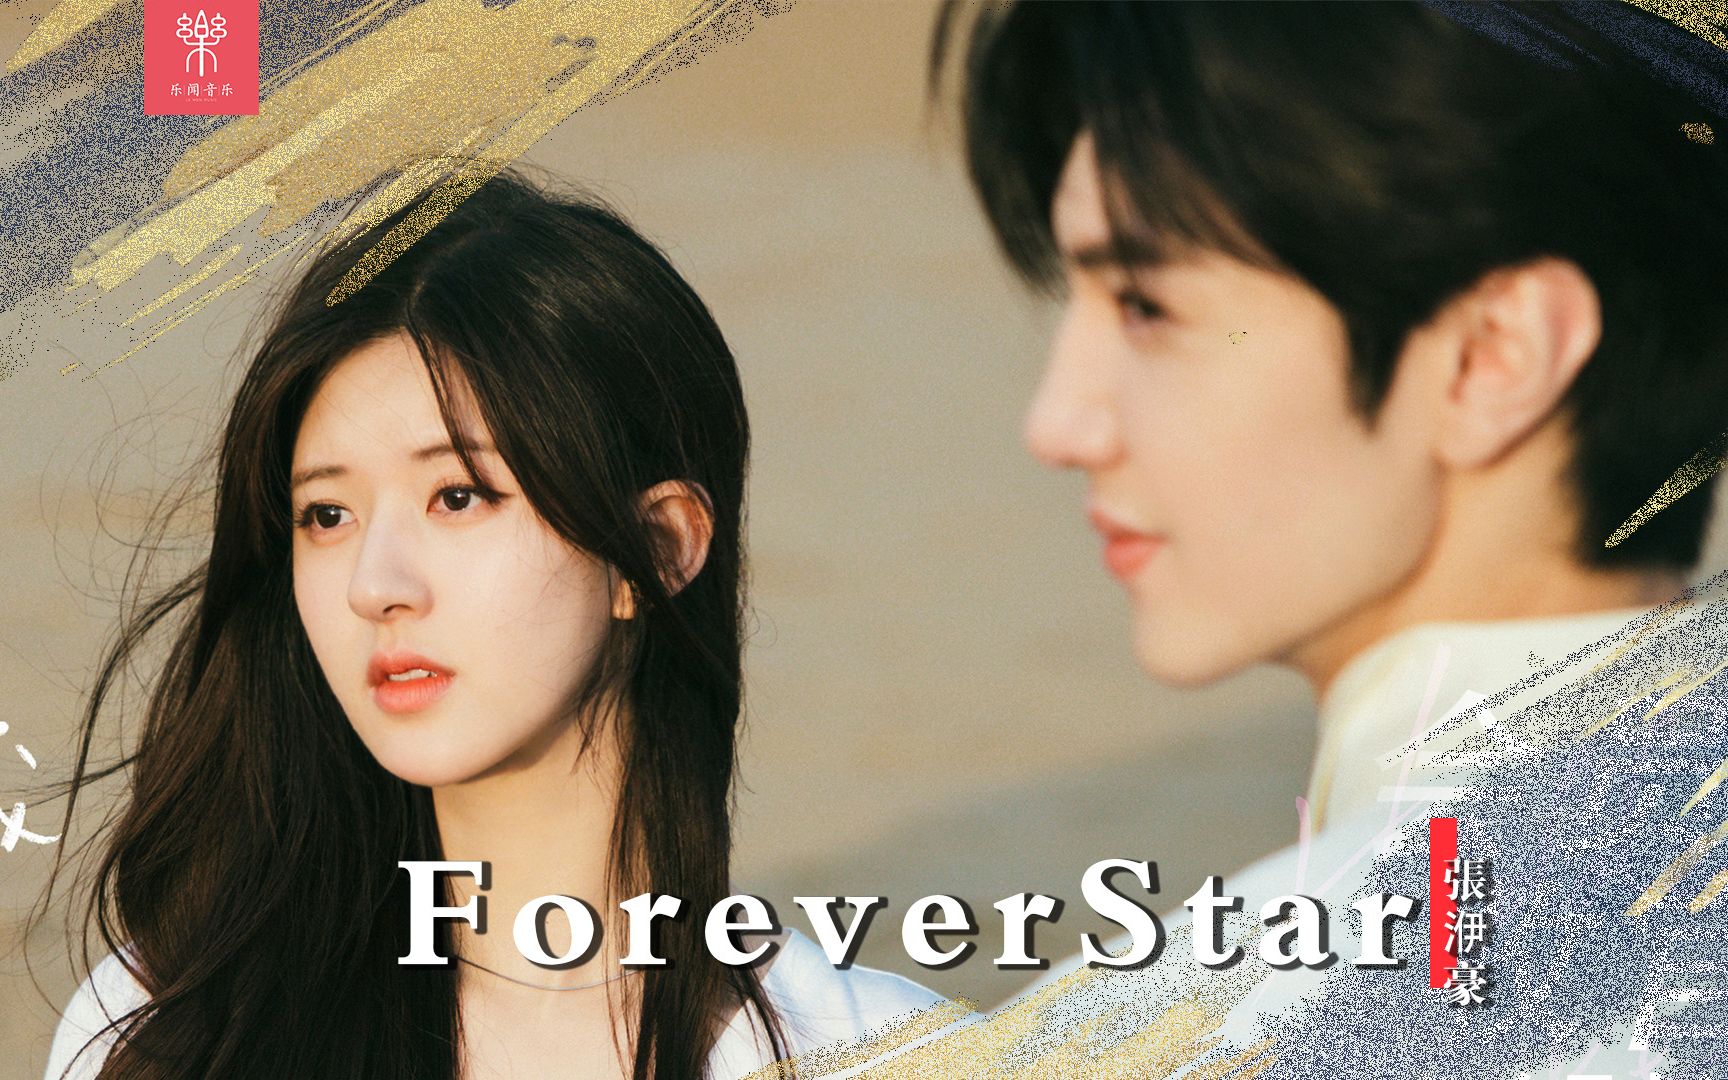 《偷偷藏不住》插曲《forever Star》淡淡喜欢到星光璀璨的暗恋故事